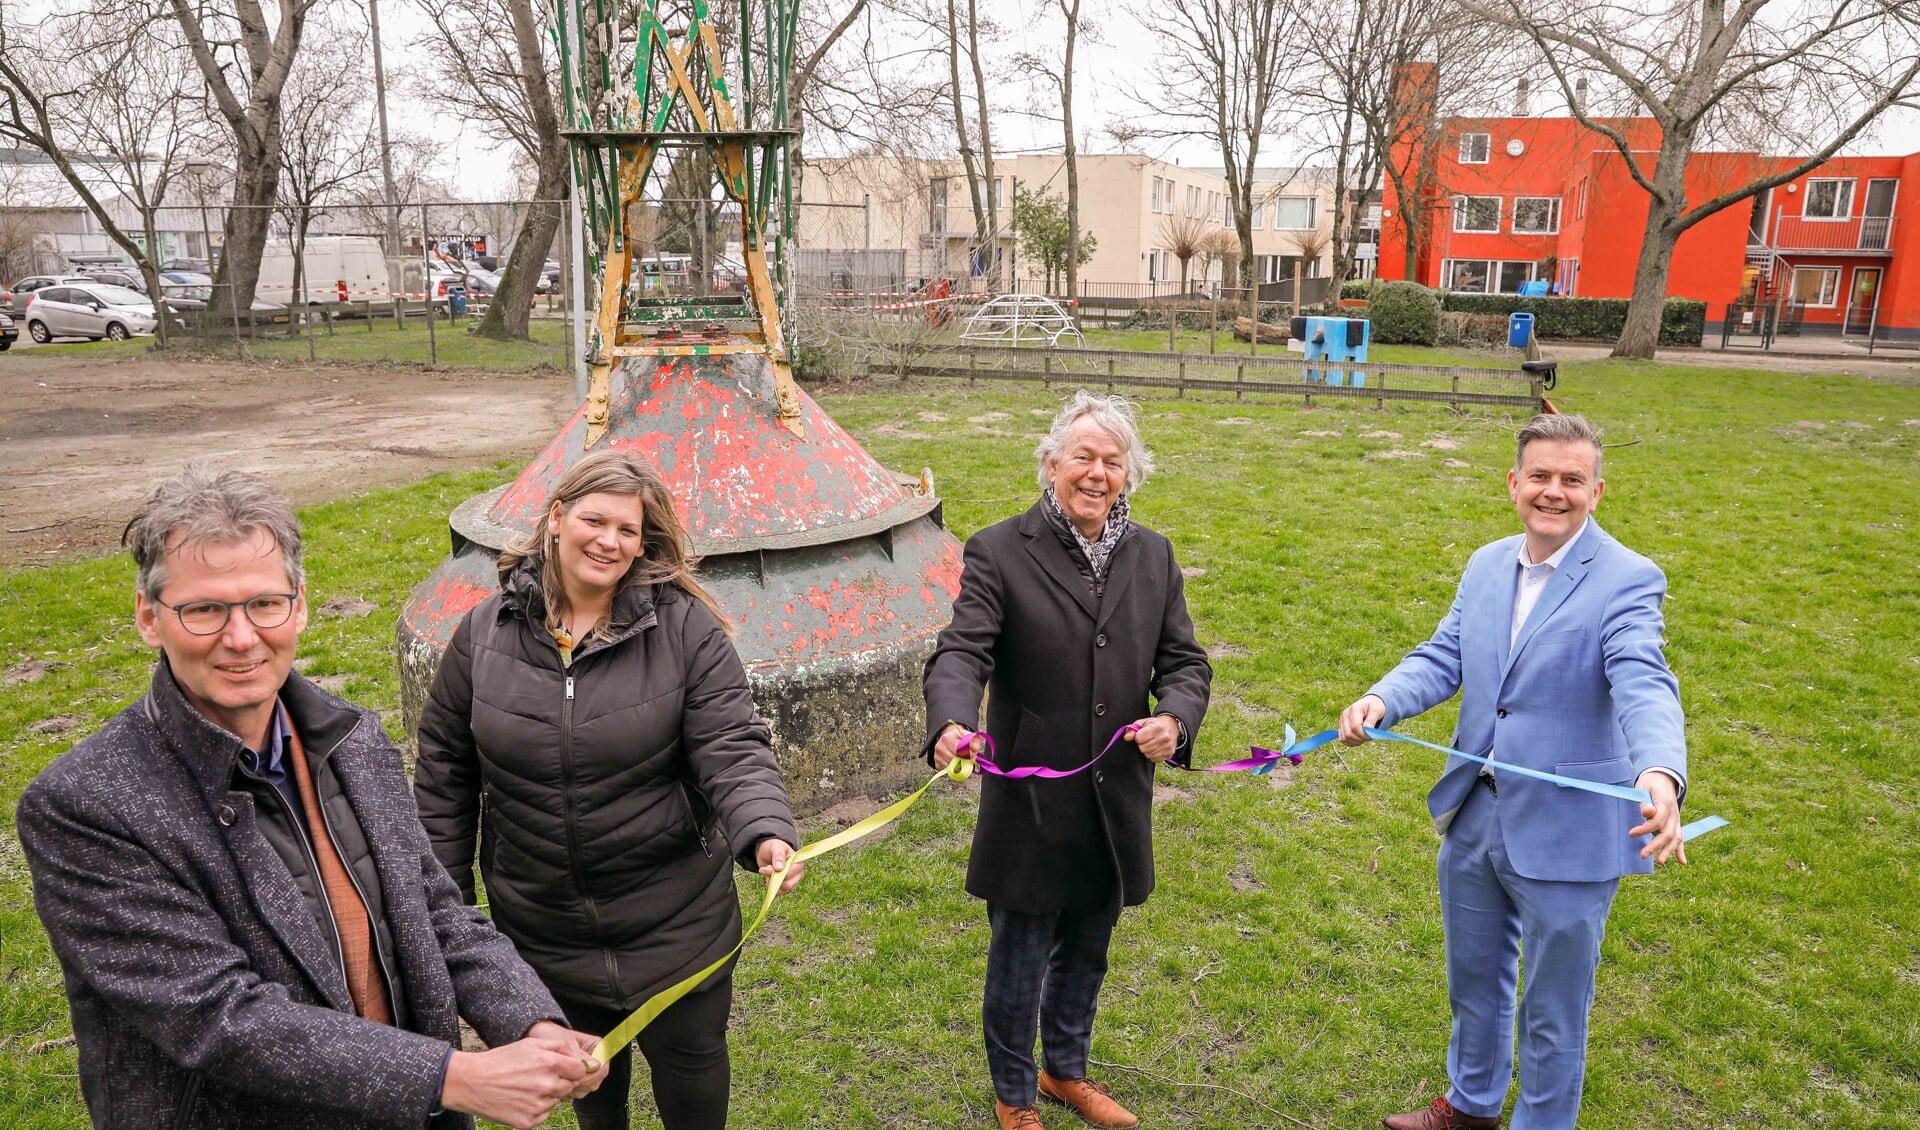 De gemeente Nieuwegein wil een nieuw gebouw bouwen op de locatie van het huidige Schippersinternaat Prins Hendrik, aan de Industrieweg in Vreeswijk.